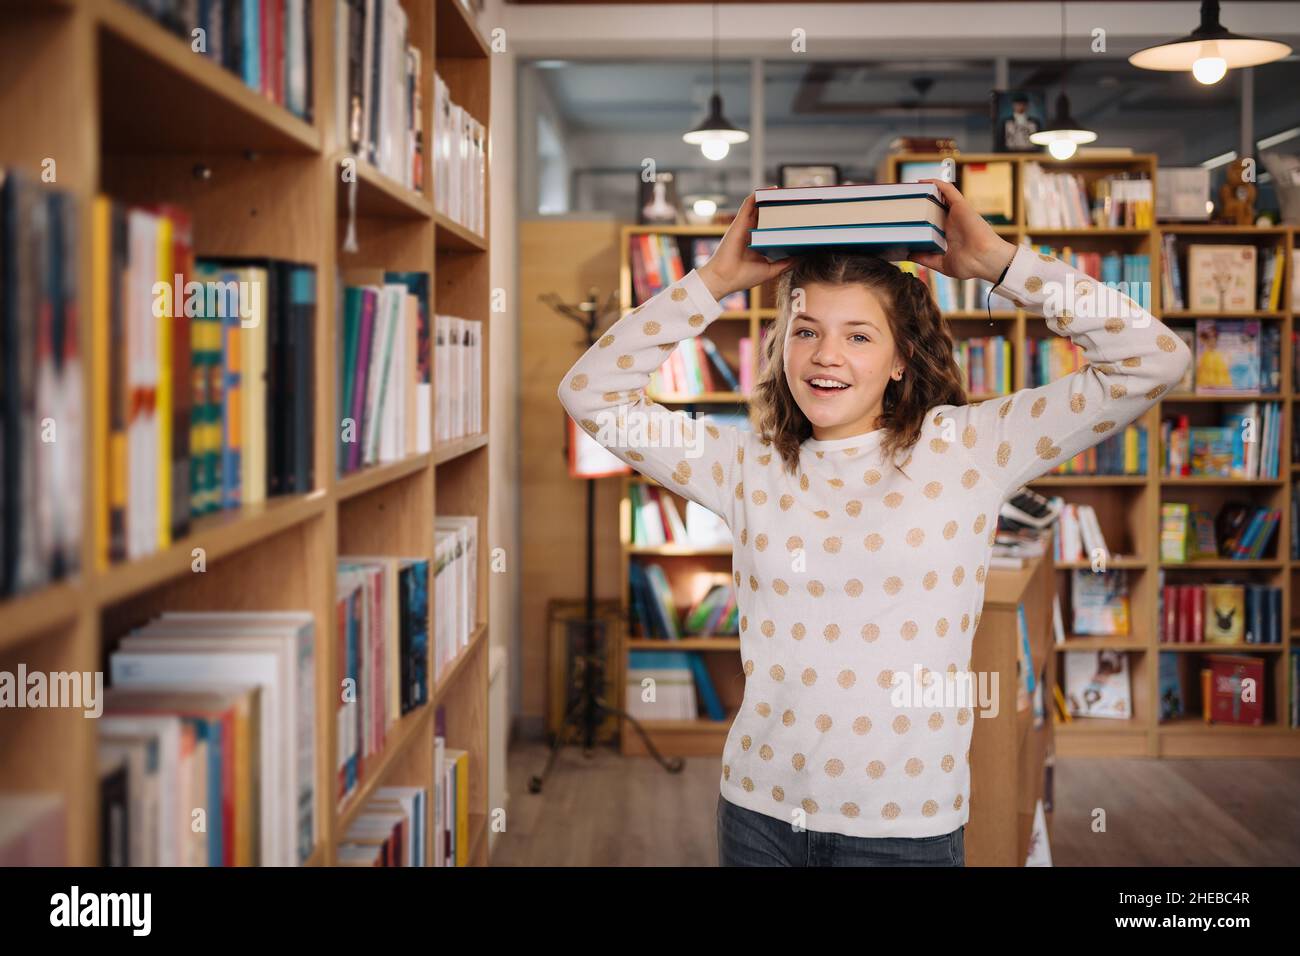 Fille de l'adolescence parmi une pile de livres.Une jeune fille tenant des livres sur la tête avec des étagères en arrière-plan.Elle est entourée de piles de livres.Réservez le jour. Banque D'Images